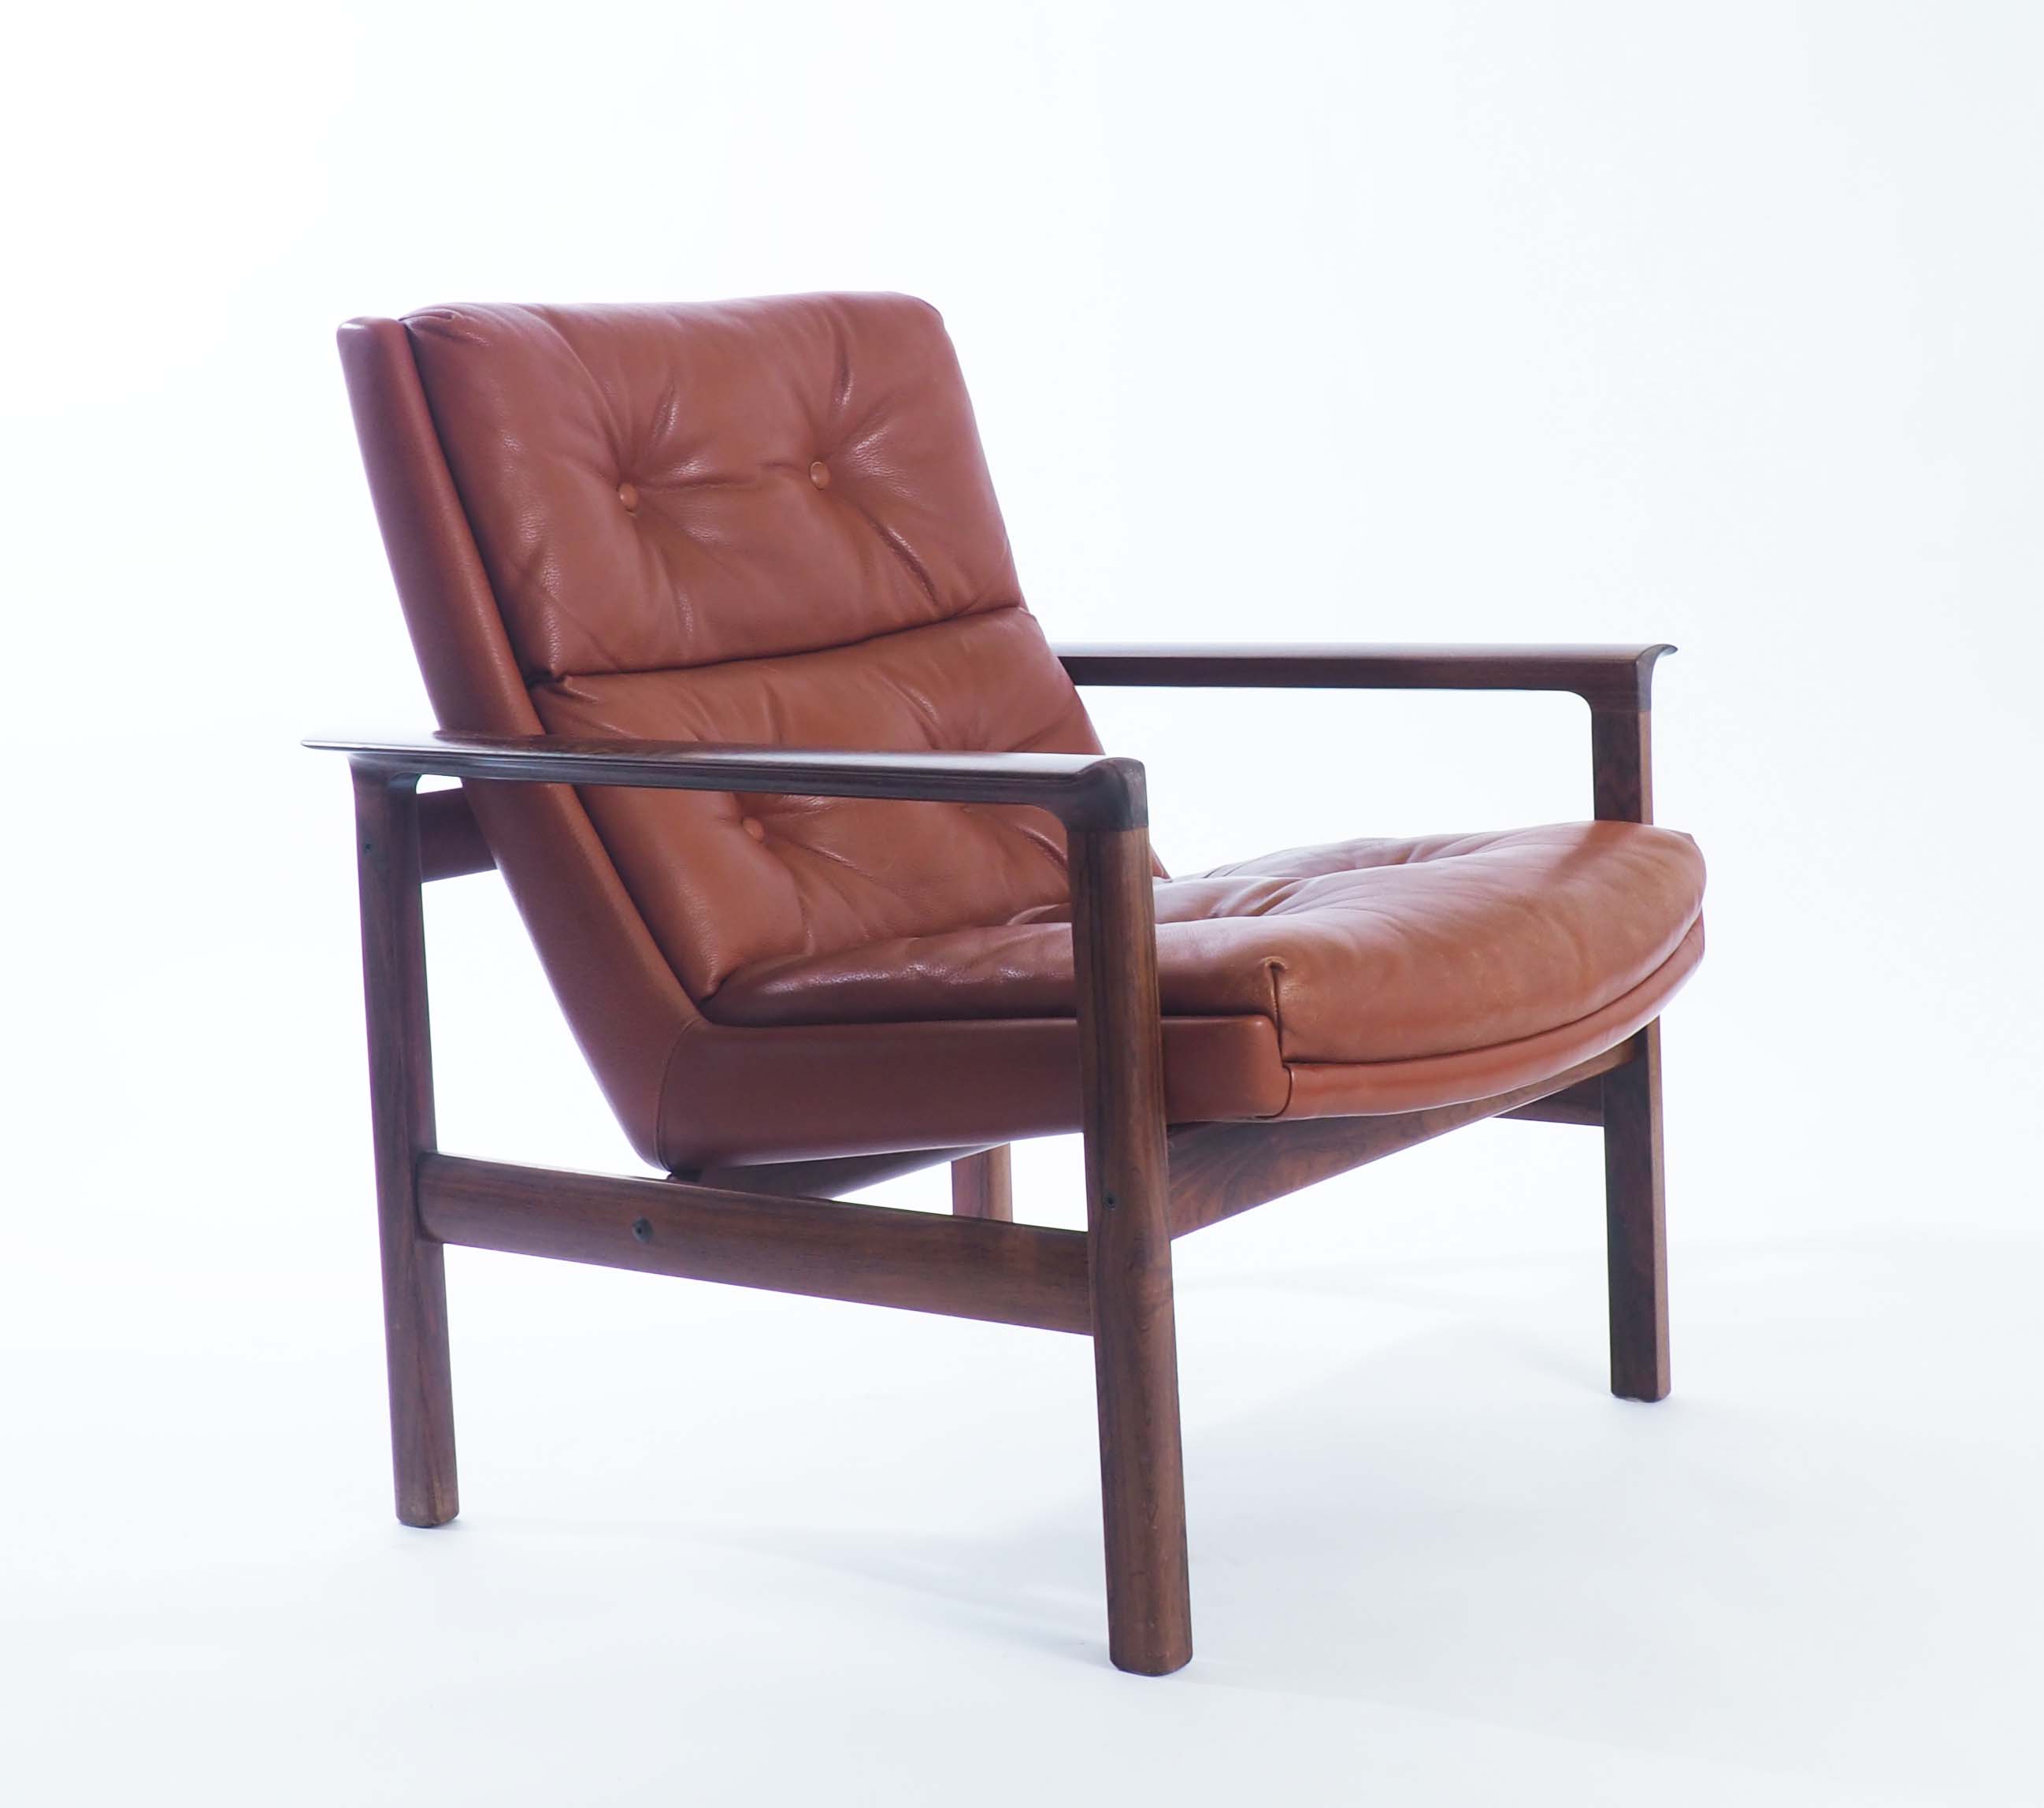 Lounge Chair by Fredrik Kayser 